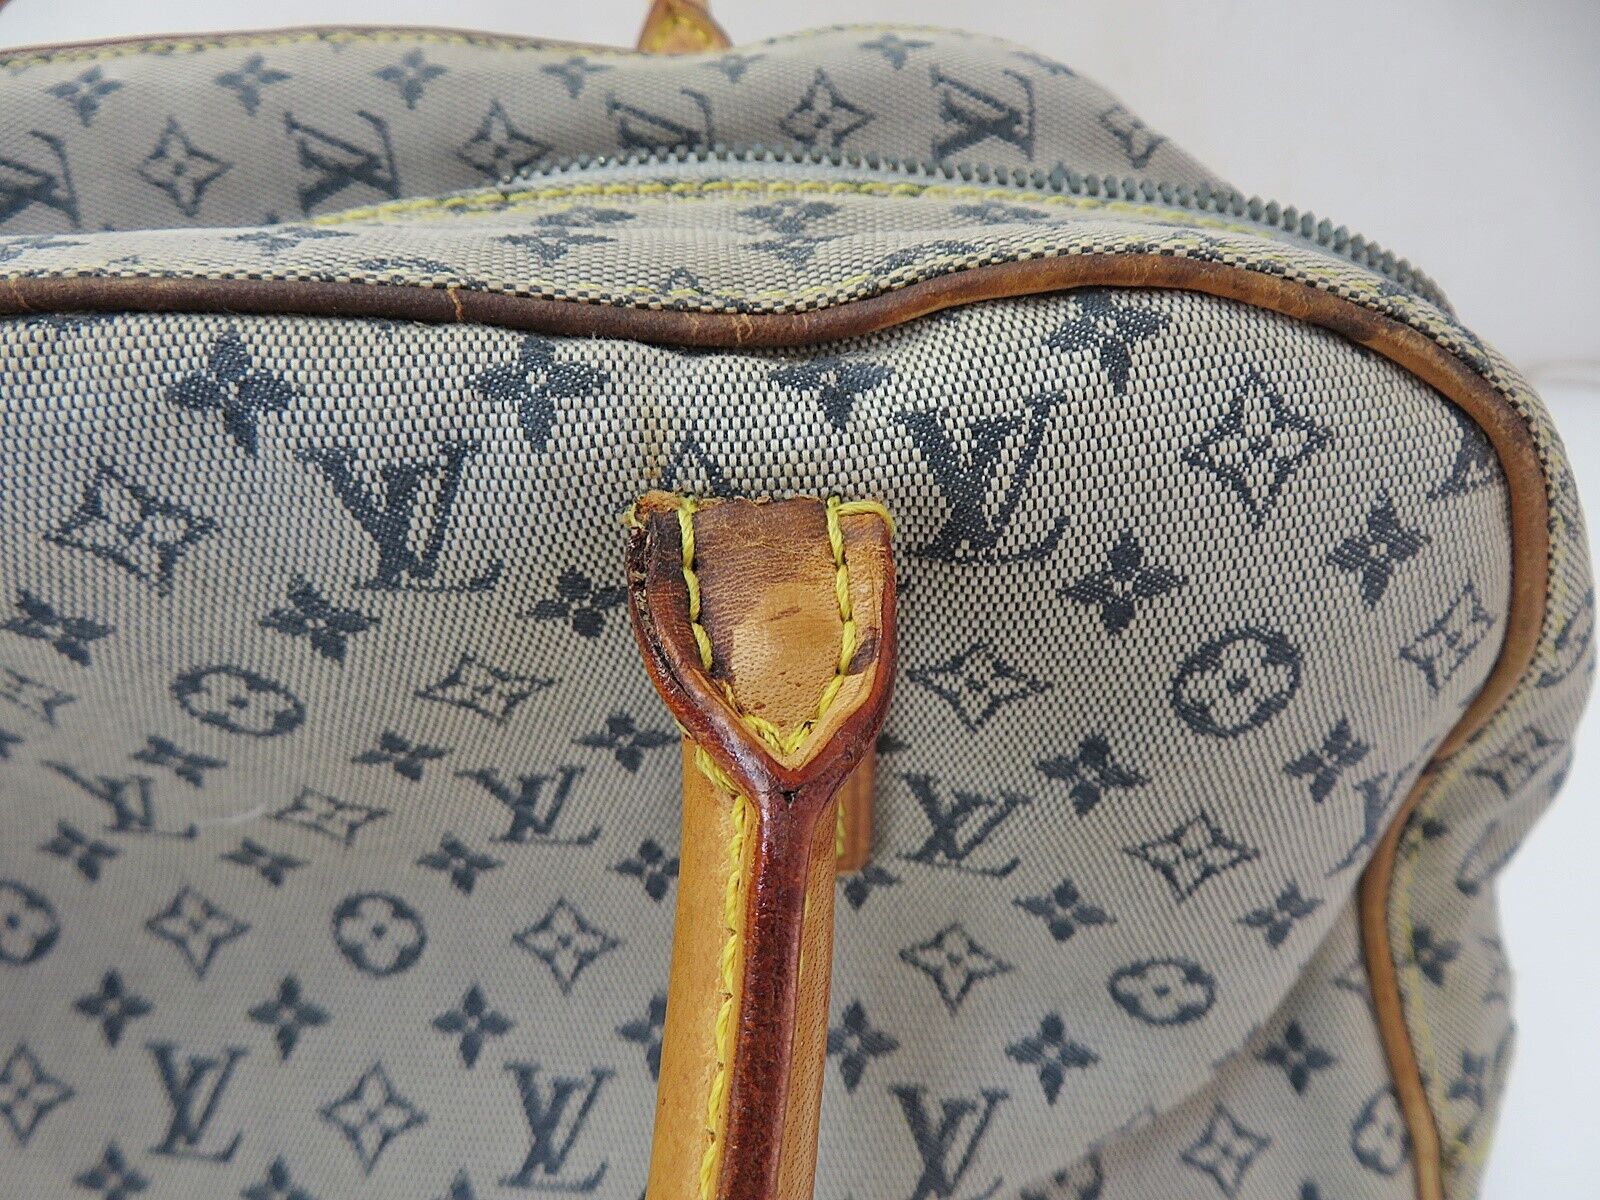 Louis Vuitton Lin Marie Cloth Travel Bag